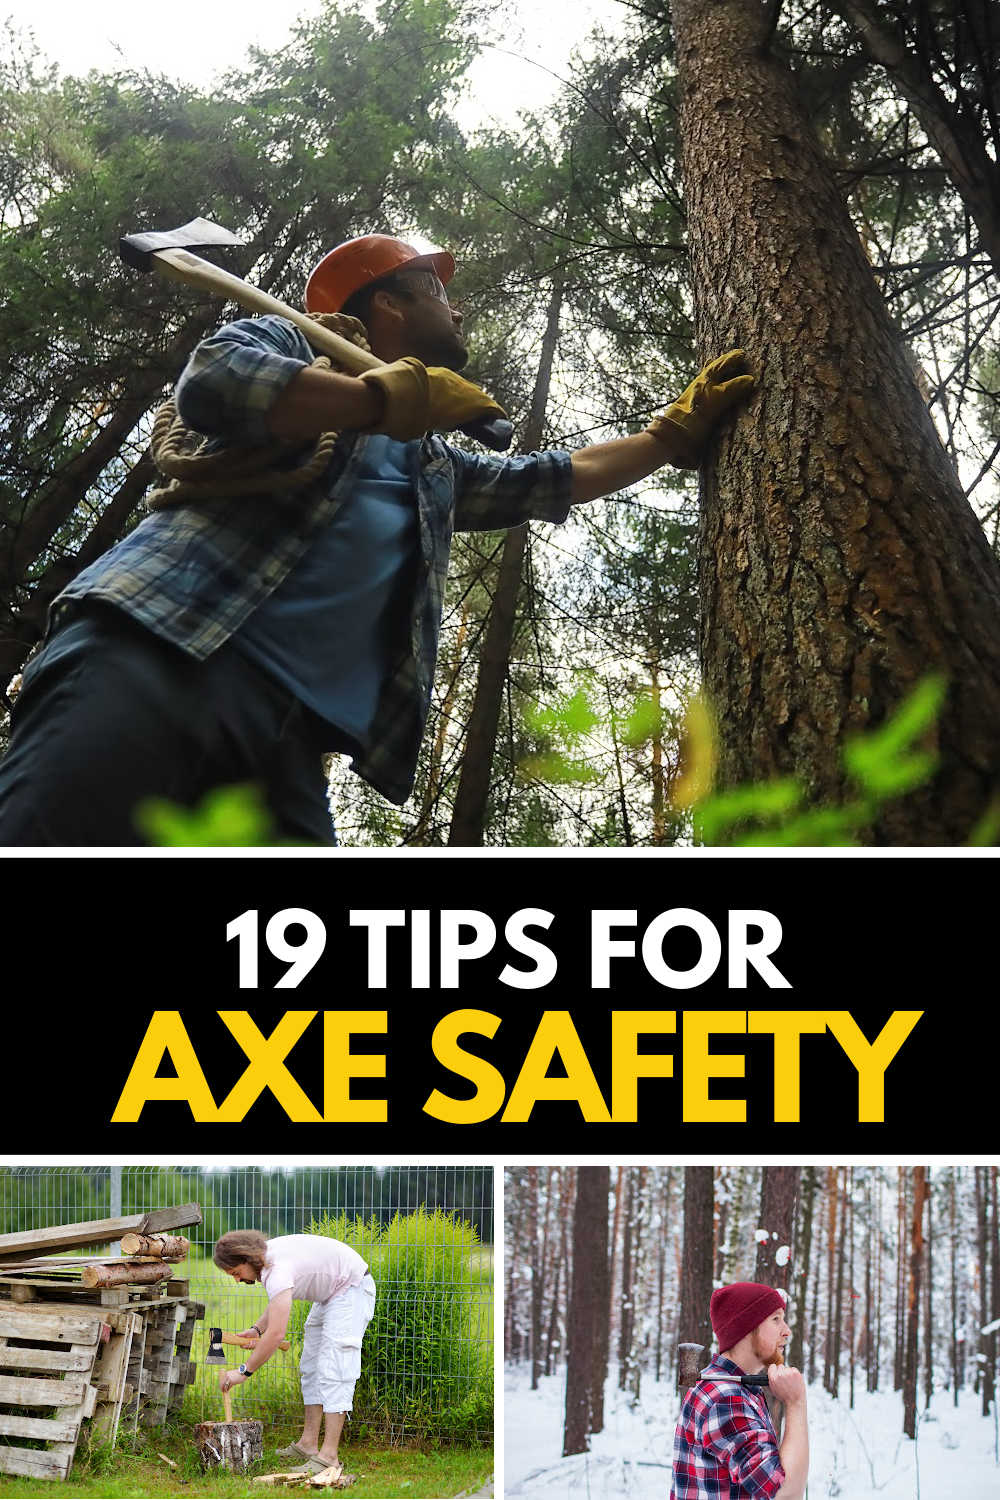 Axe safety tips